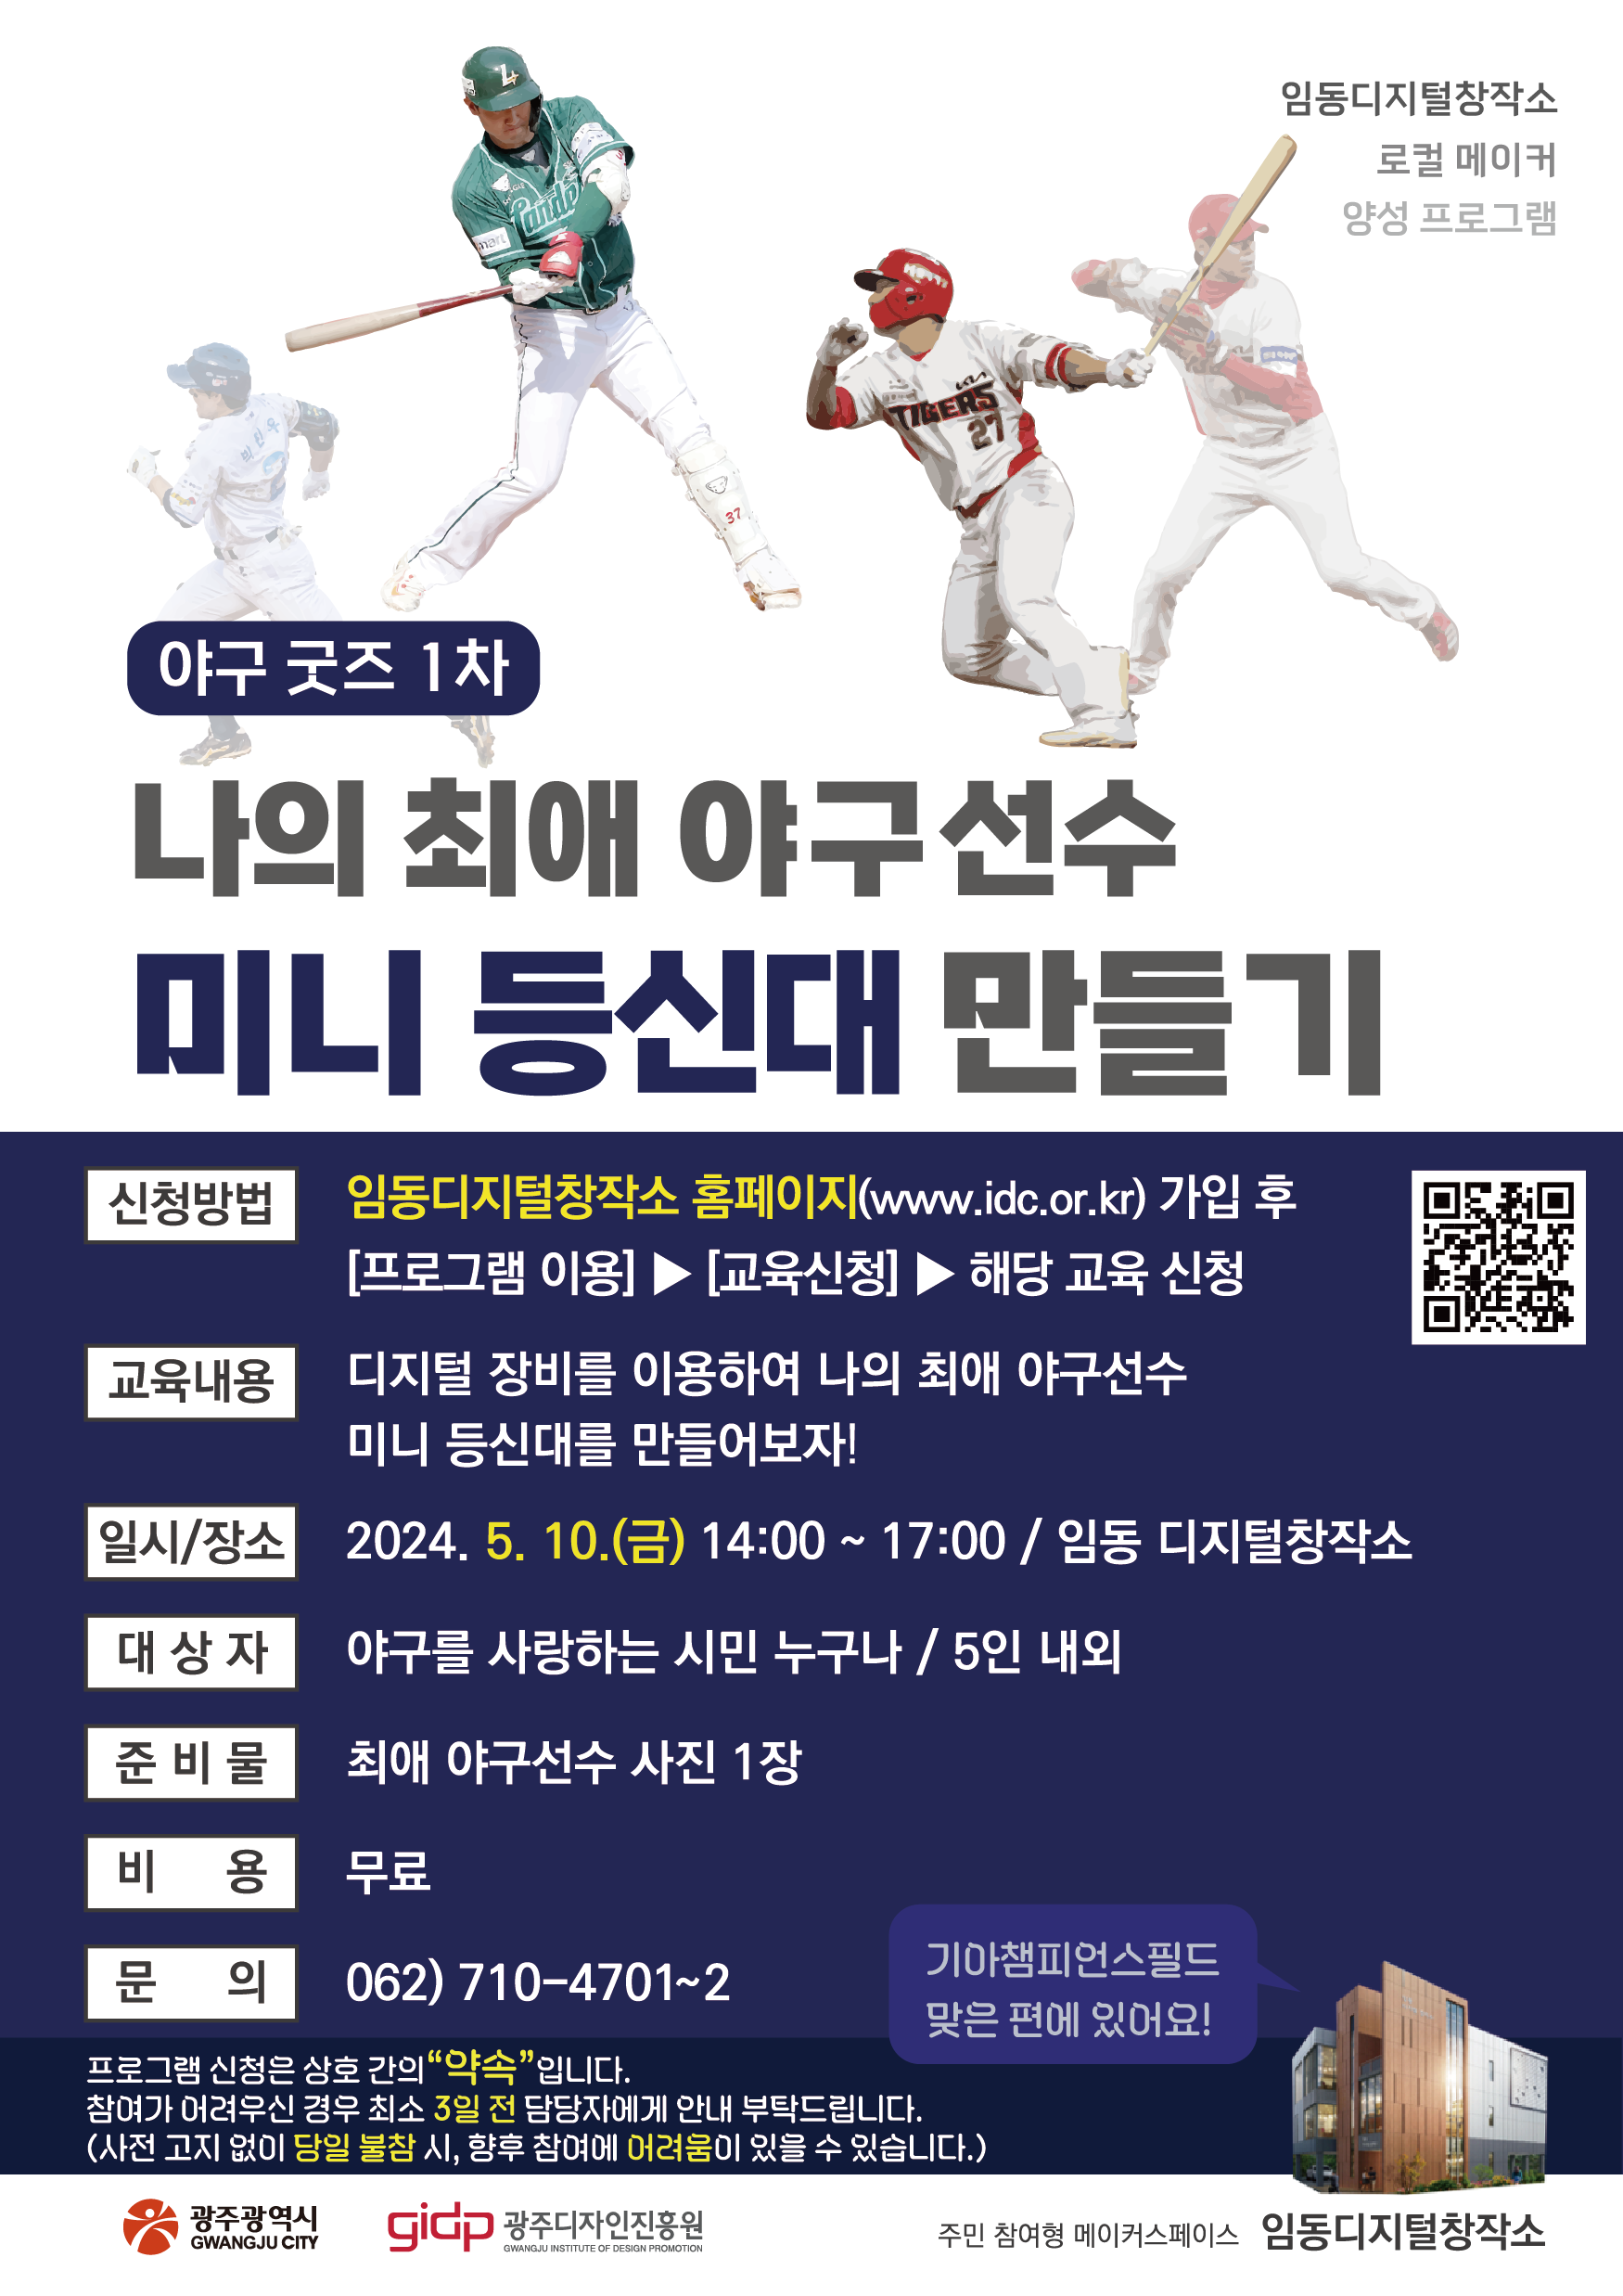 나의 최애 야구선수 미니 등신대 만들기 홍보 포스터